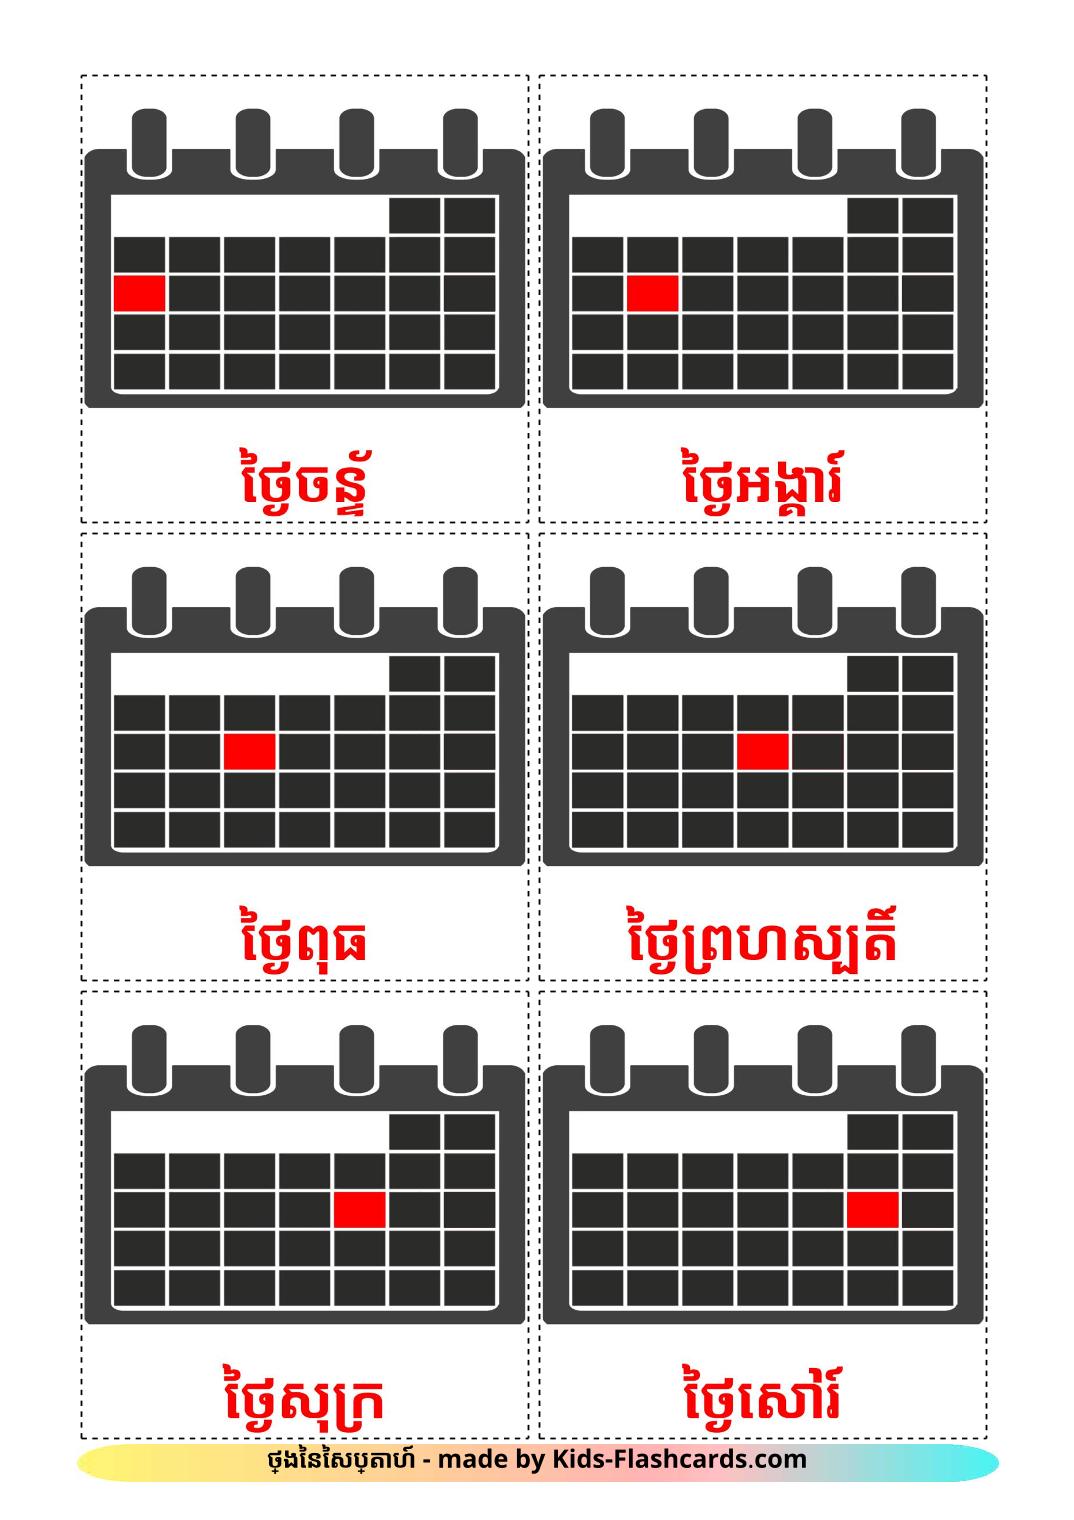 Les Jours de la Semaine - 12 Flashcards khmer imprimables gratuitement